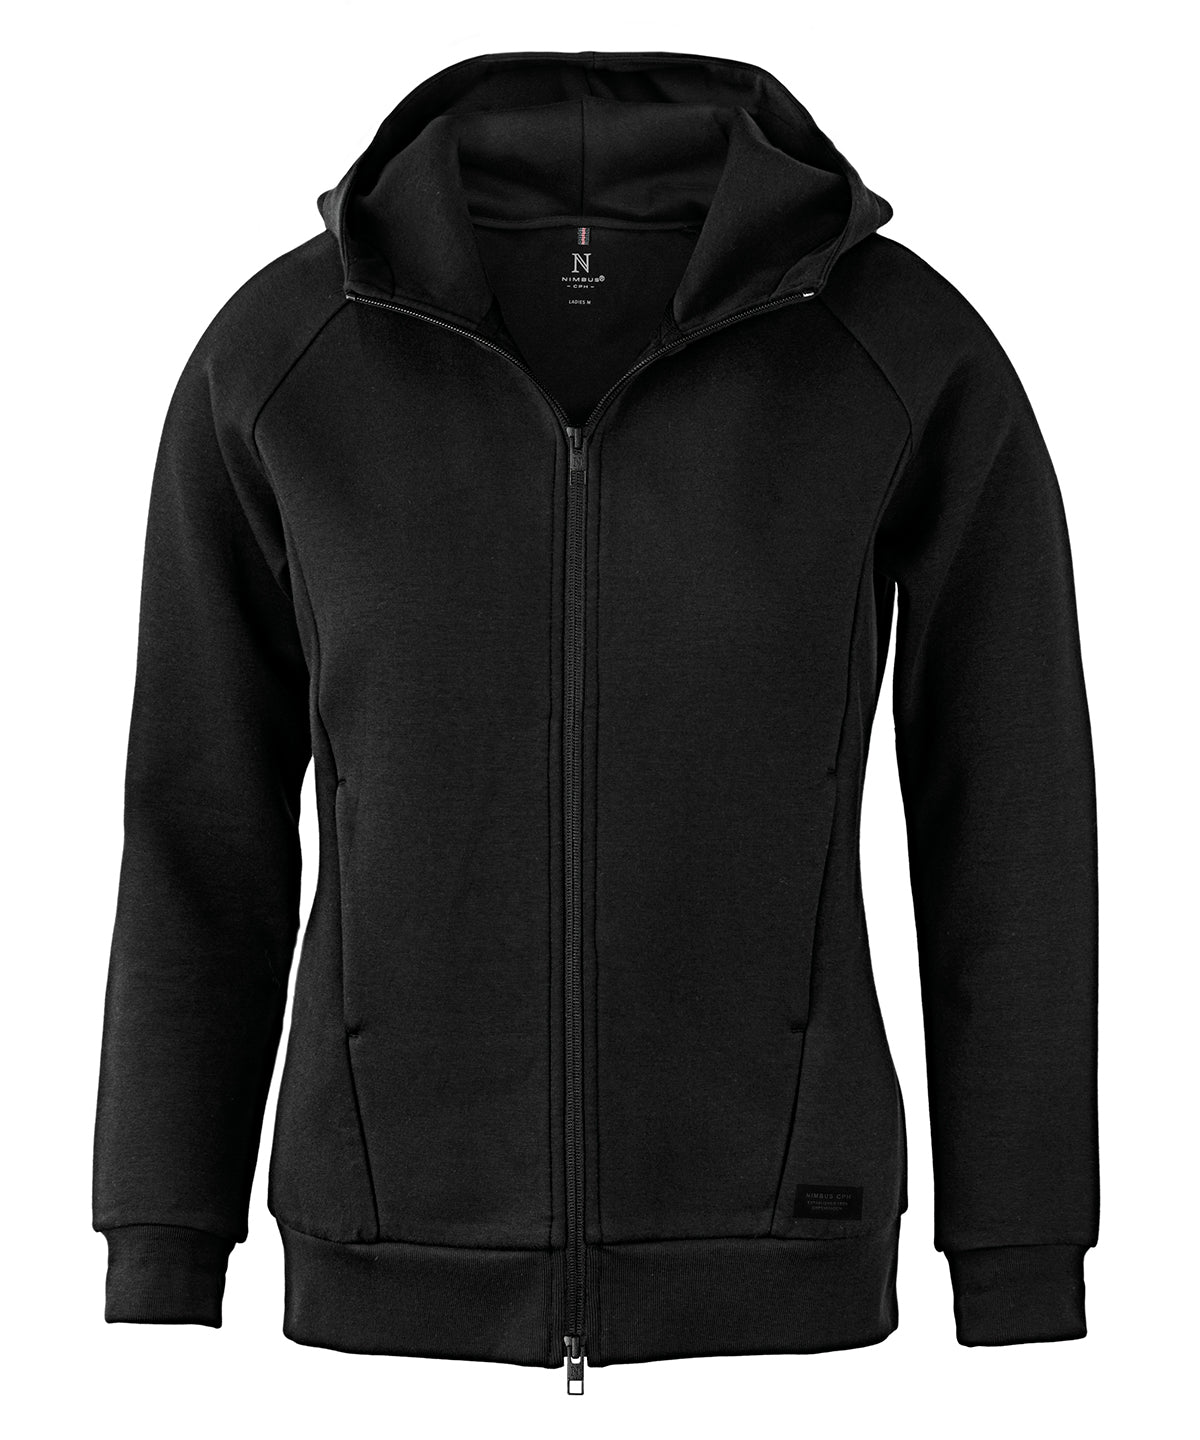 Personalised Hoodies - Black Nimbus Women’s Hampton – premium double-faced hoodie